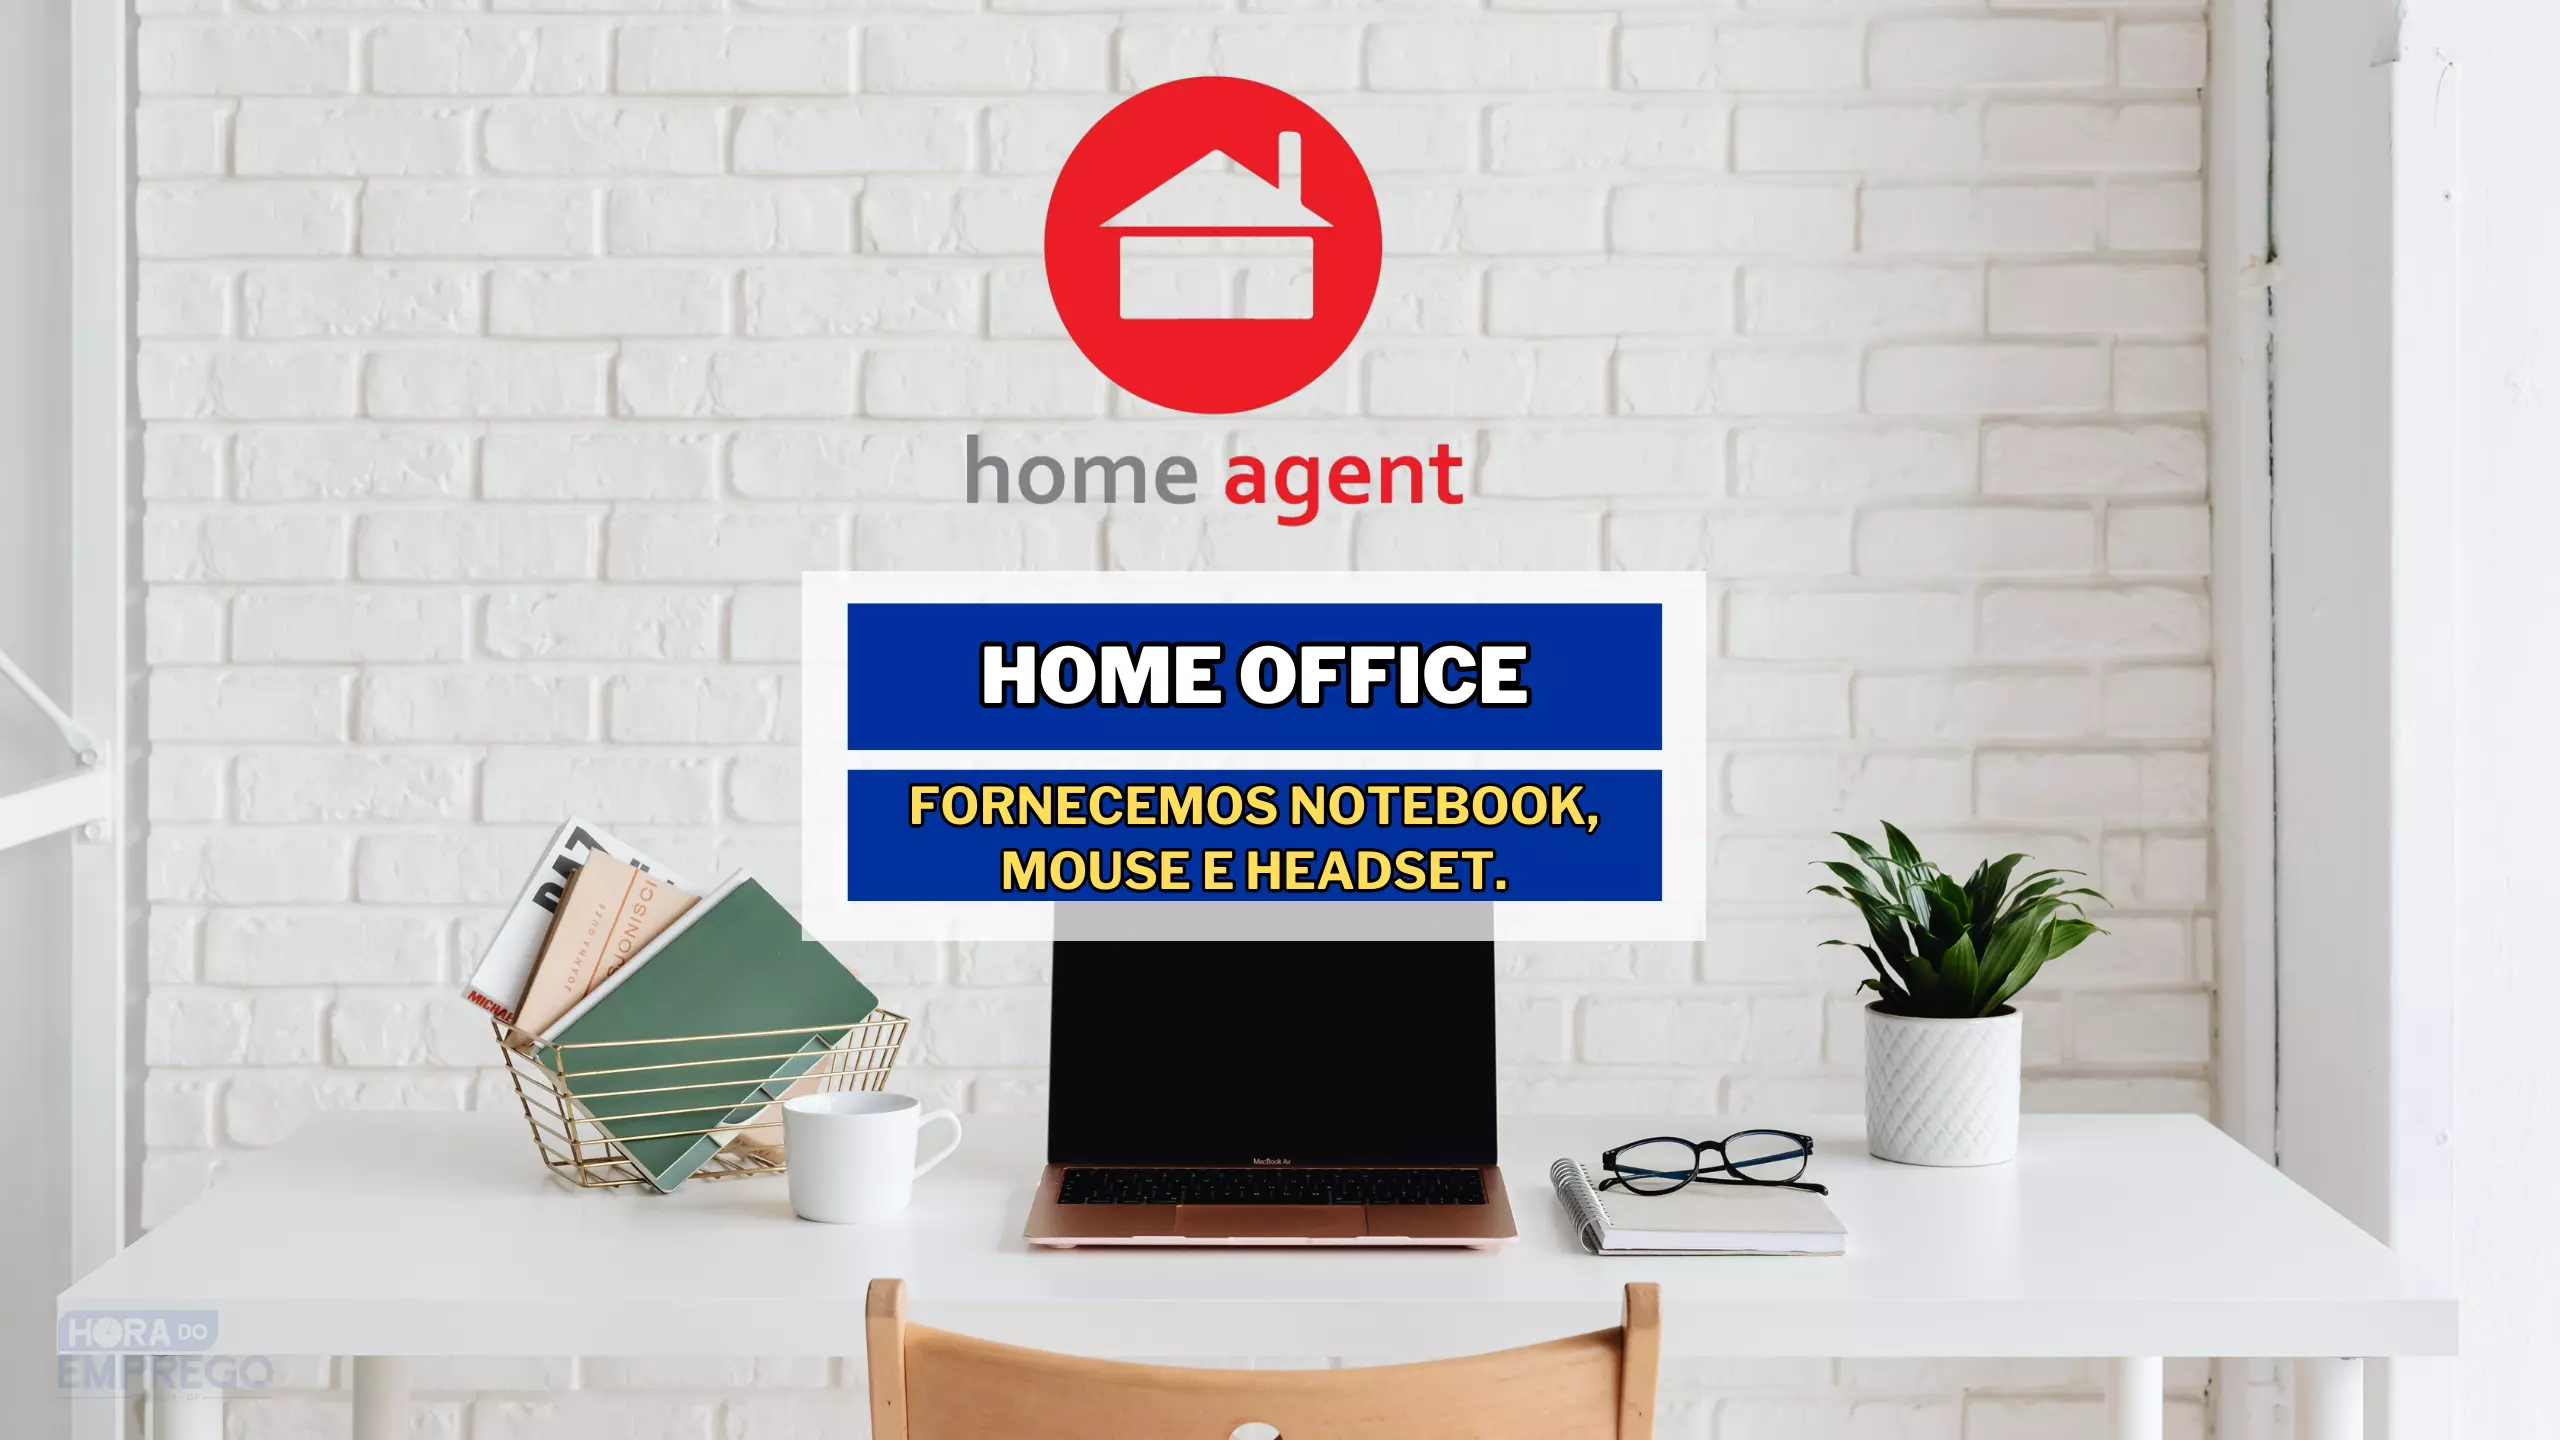 Home Agent contrata para trabalhar de casa em HOME OFFICE e ainda Fornece notebook, mouse e headset.